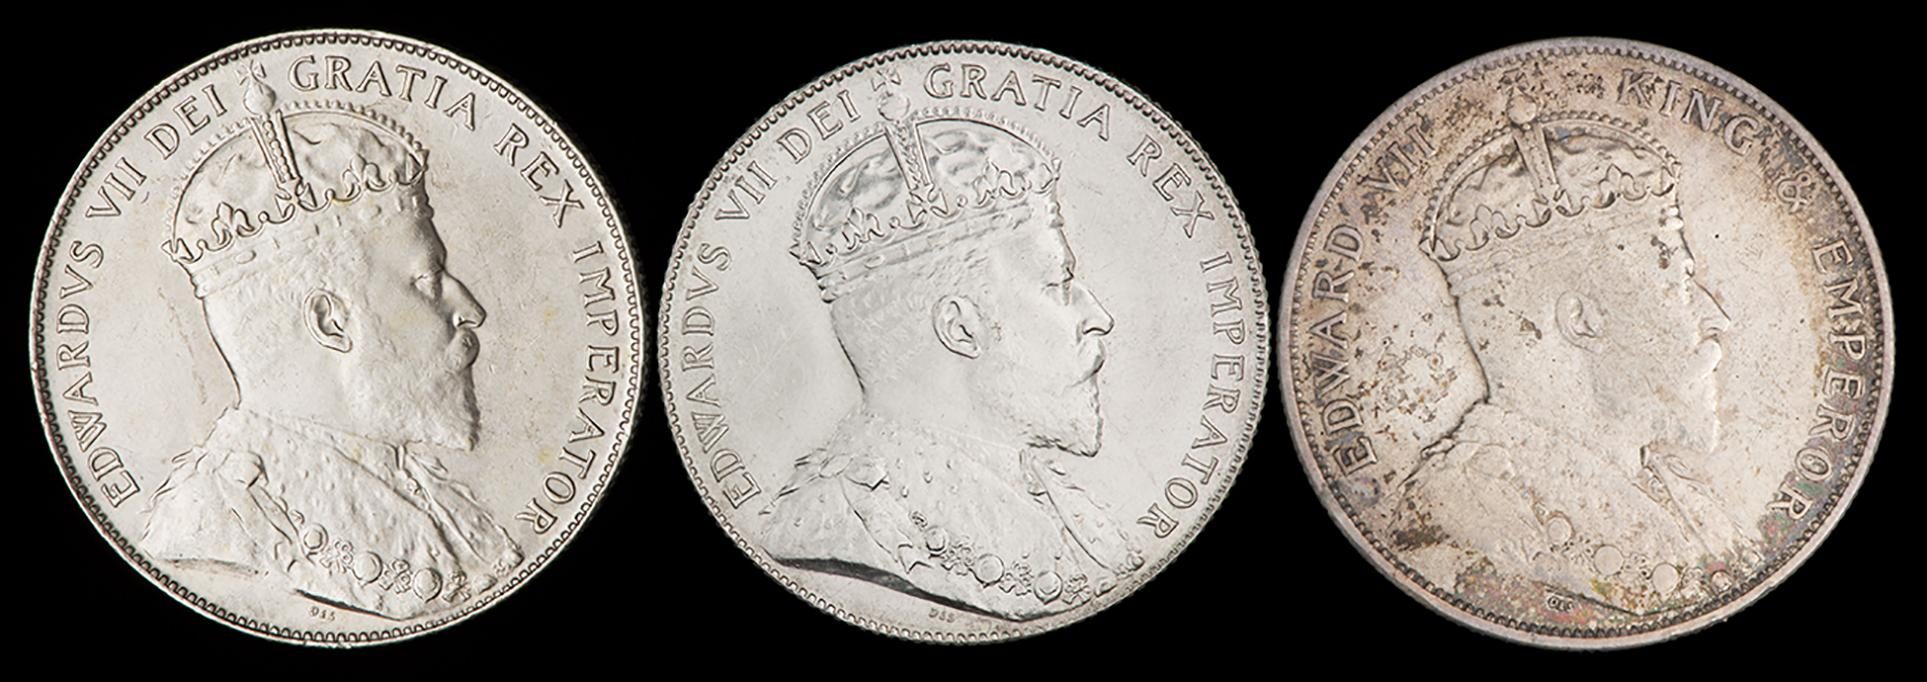 trois vieilles pièces de monnaie dont le côté face semble identique